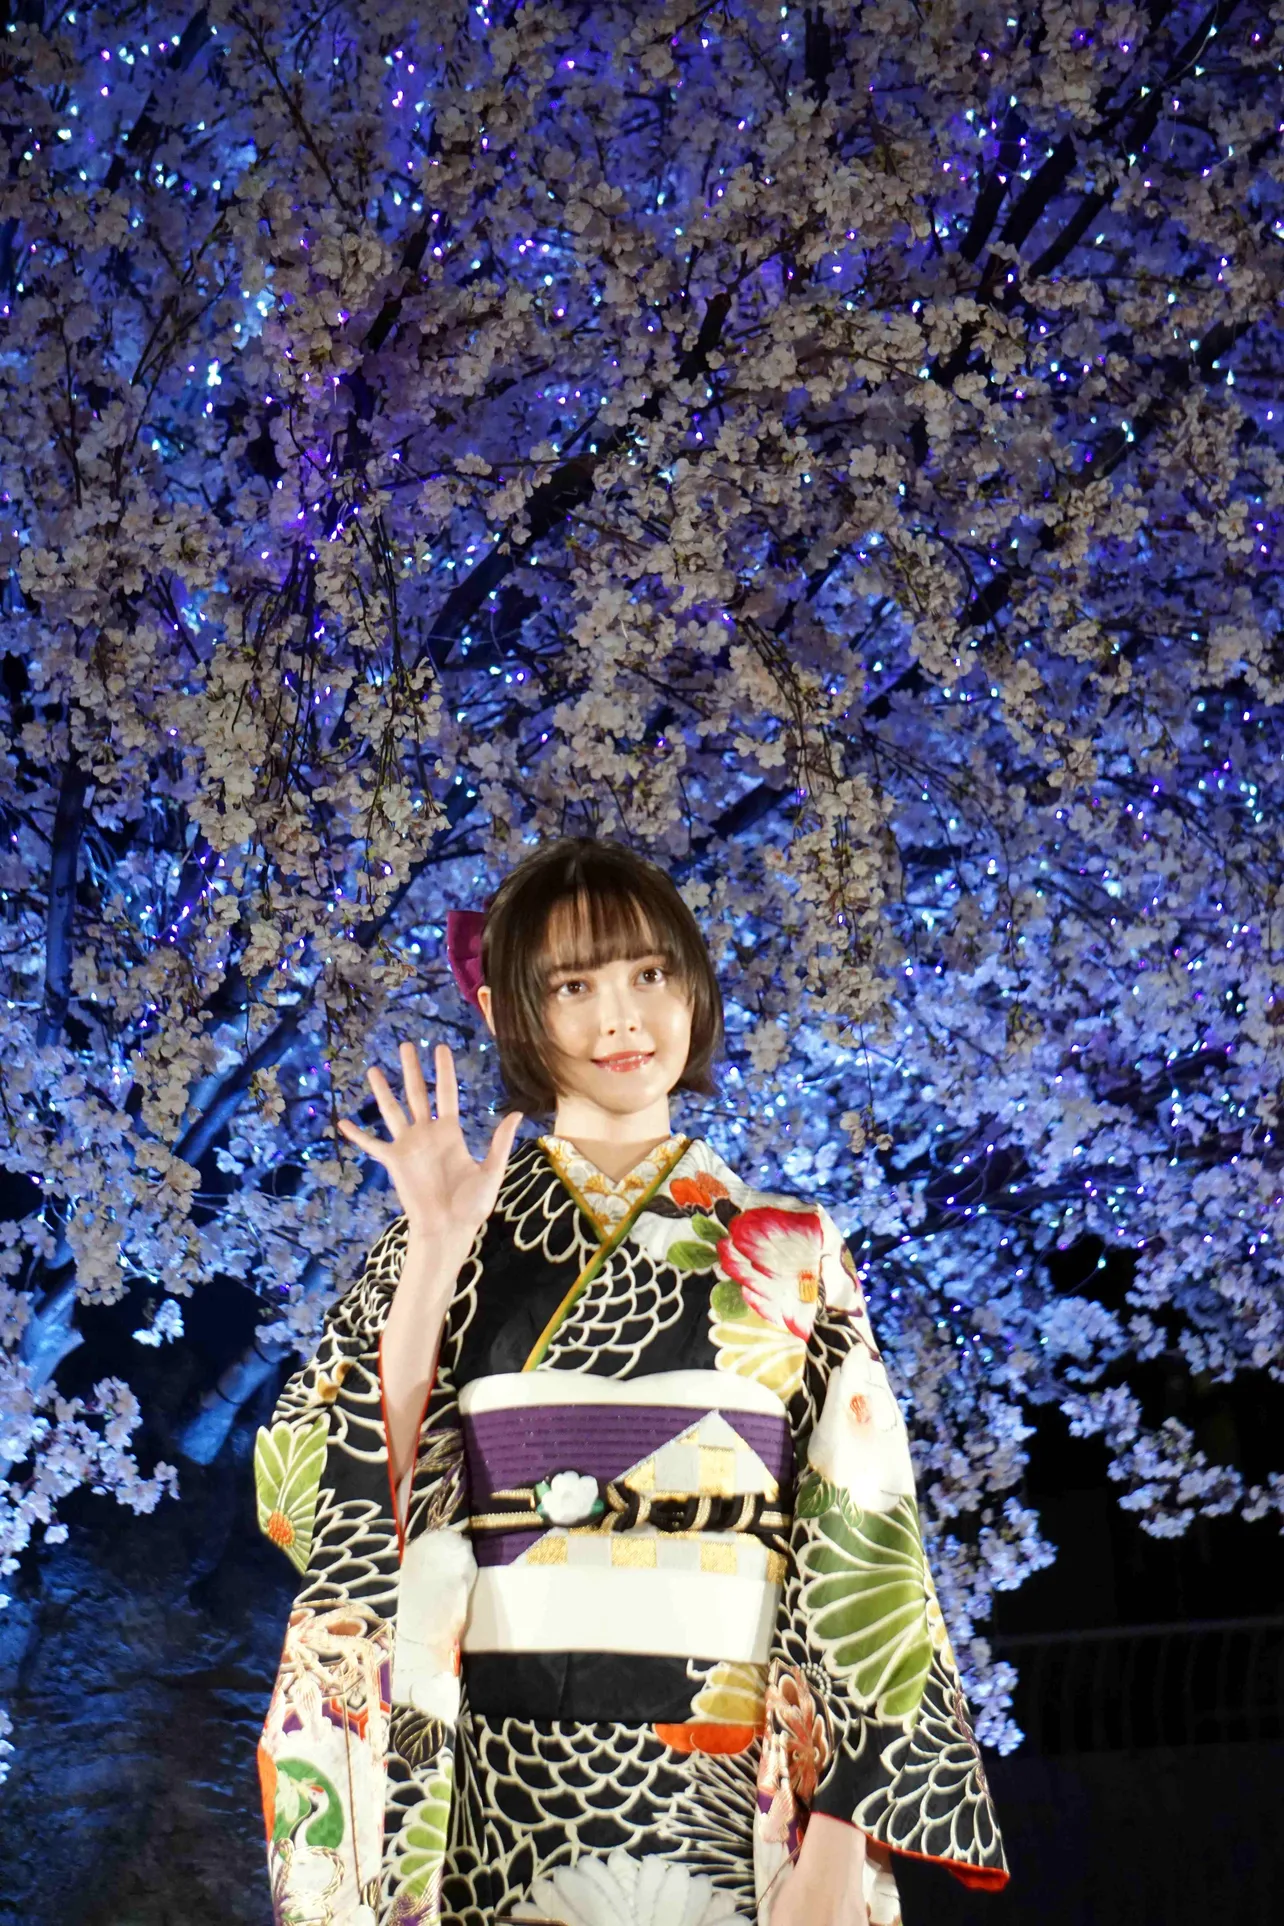 「ものすごくきれいな『桜』の下で、こんな素敵な着物を着て参加ができてすごくうれしく思います！」と告白